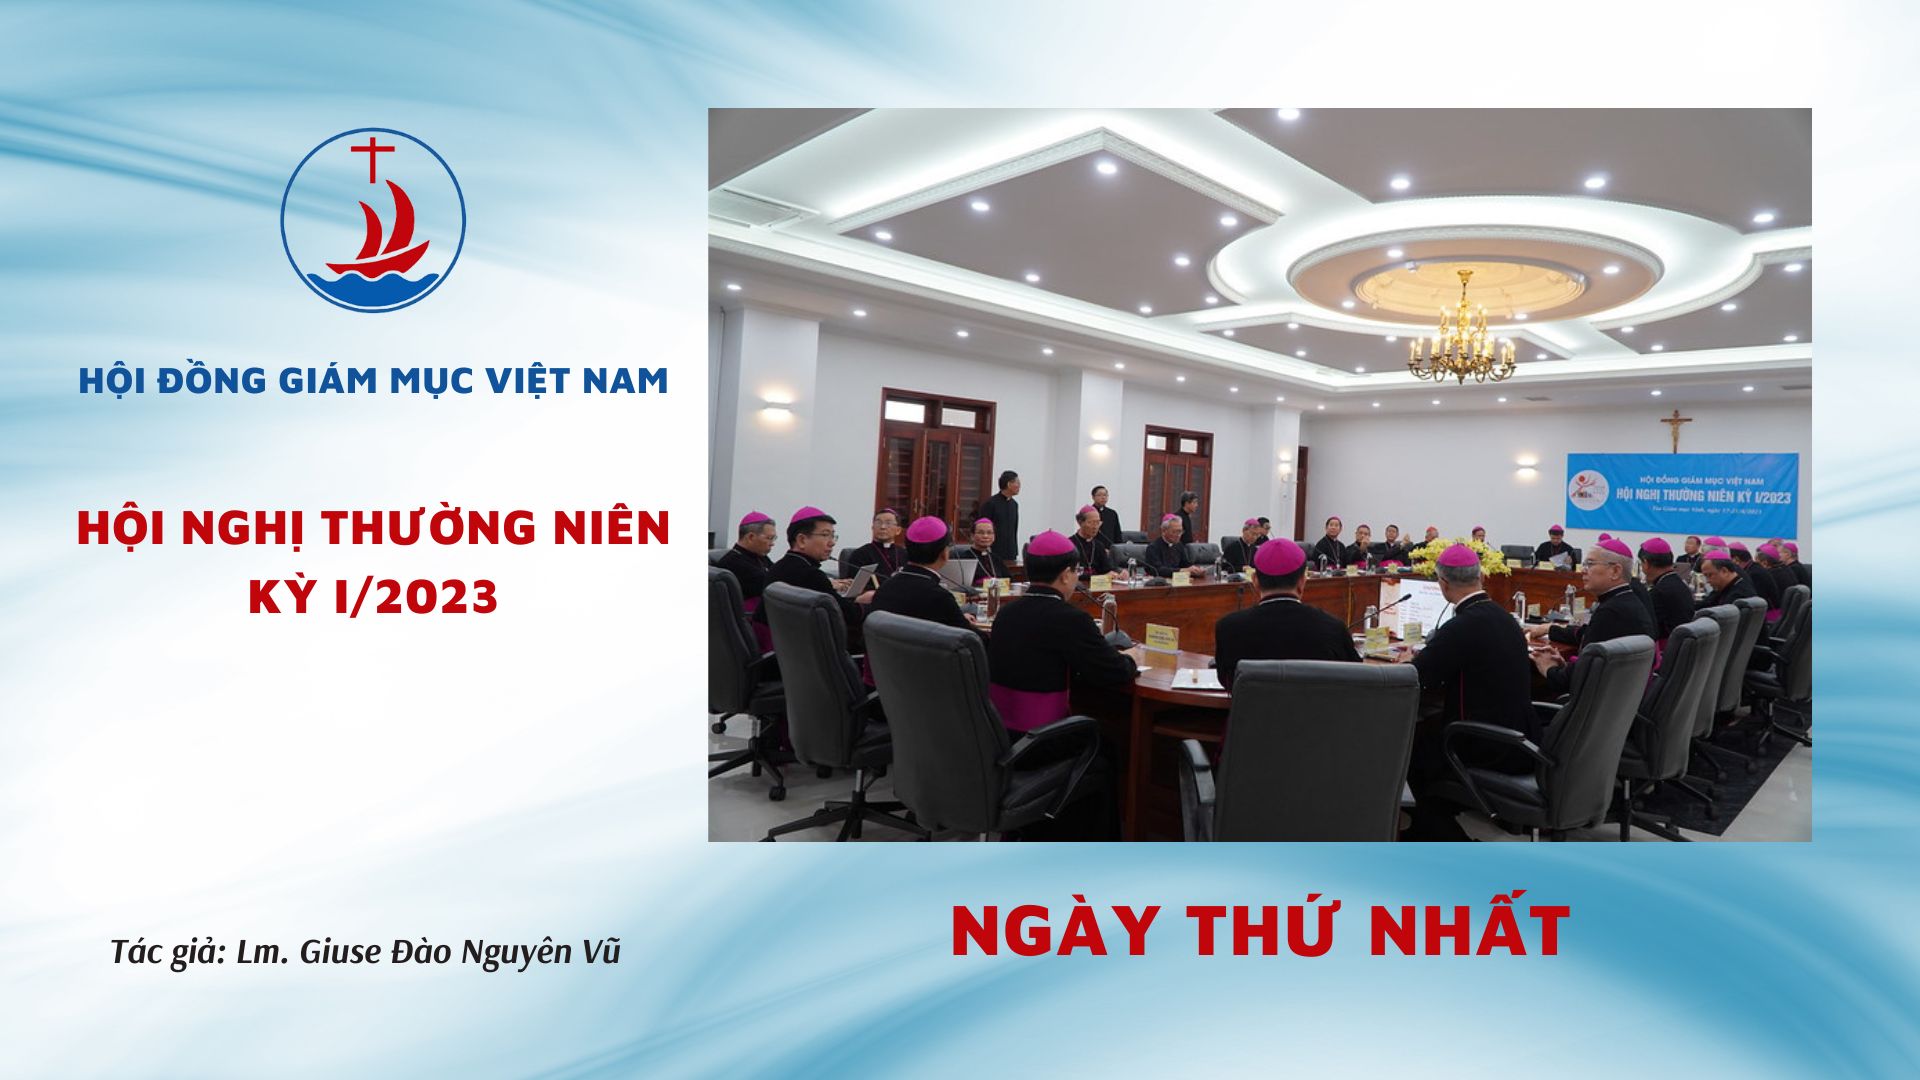 Hội đồng Giám mục Việt Nam: Hội nghị thường niên kỳ I/2023 ngày thứ nhất